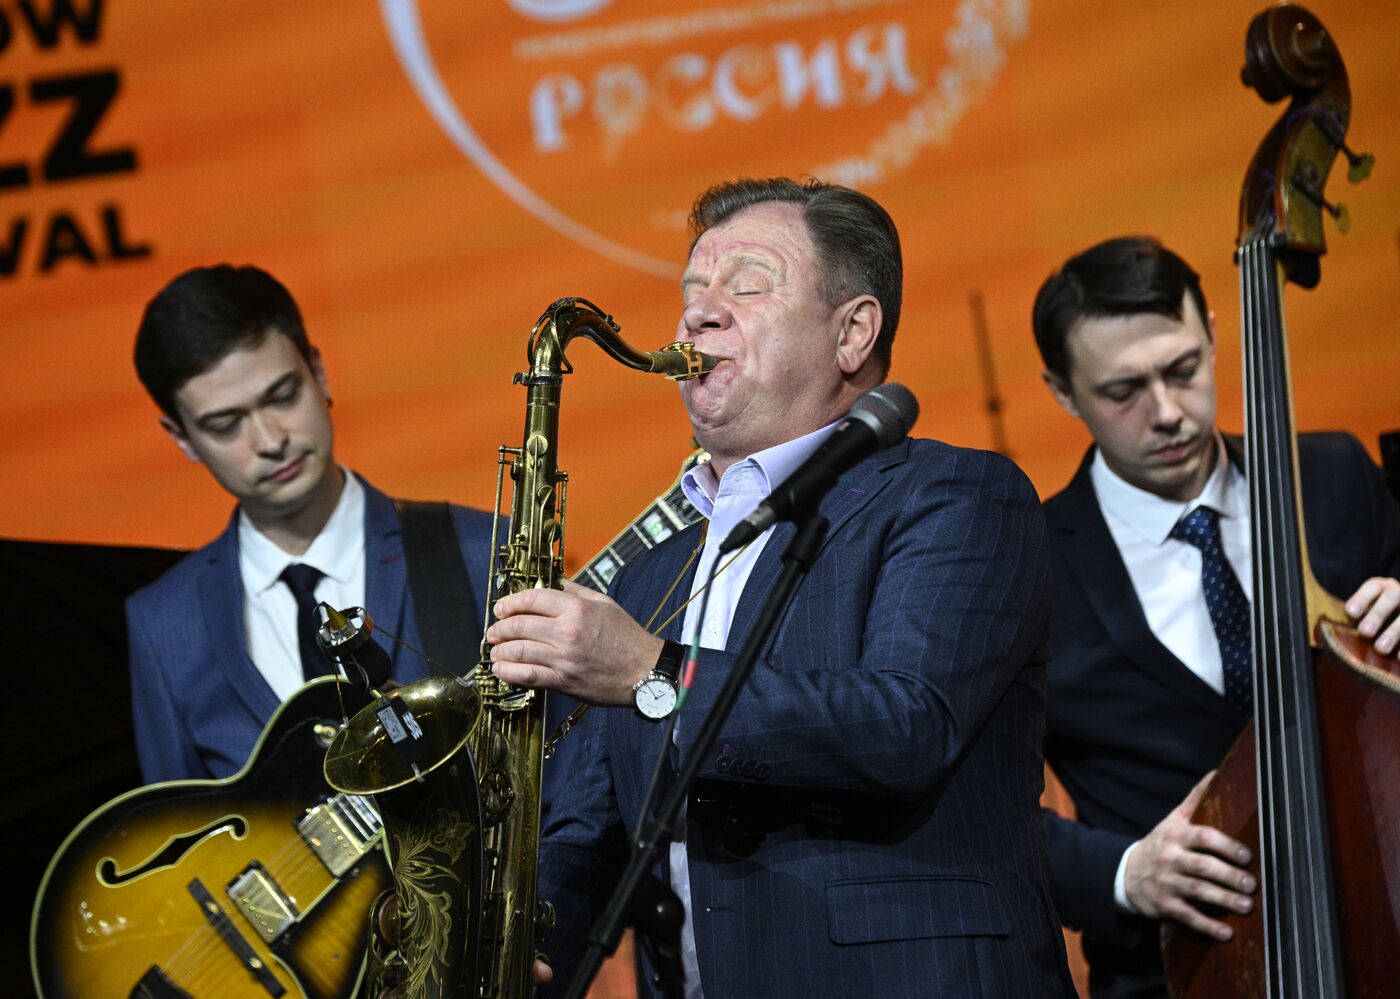 Выставка "Россия". Специальная концертная программа в рамках презентации Moscow Jazz Festival